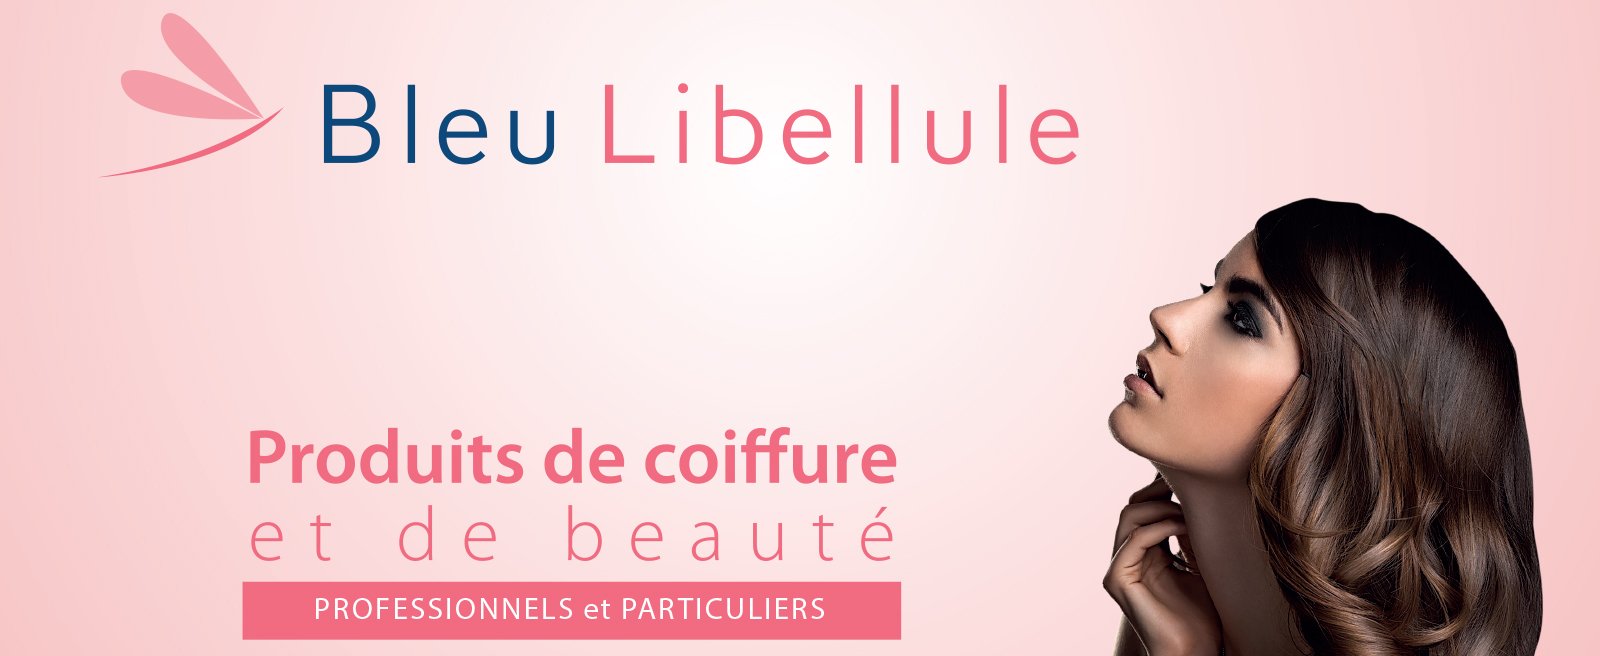 Boutique Bleu Libellule - L'Usine Mode & Maison